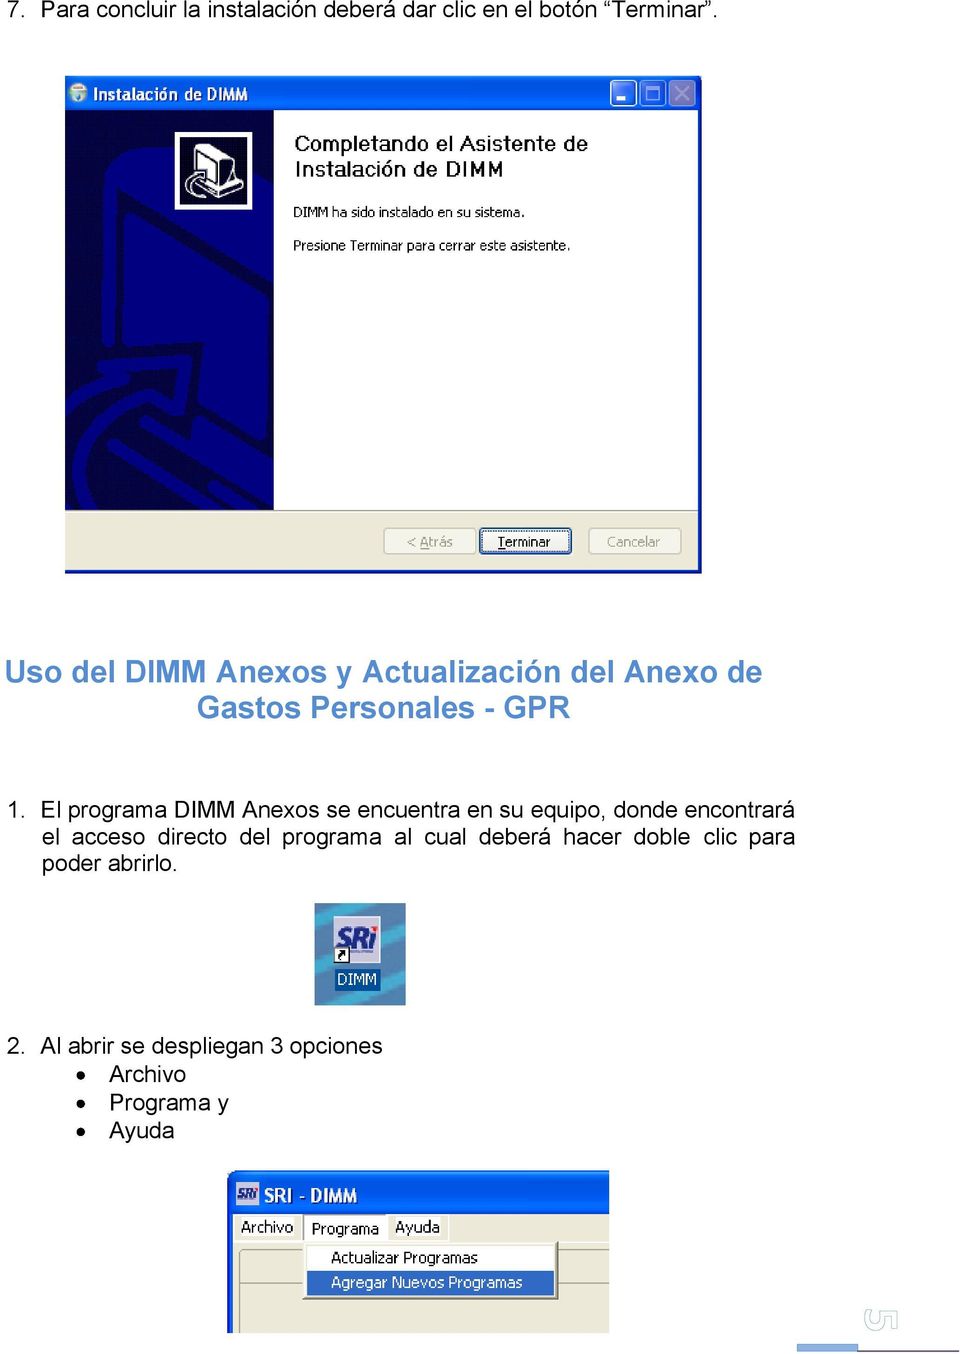 El programa DIMM Anexos se encuentra en su equipo, donde encontrará el acceso directo del